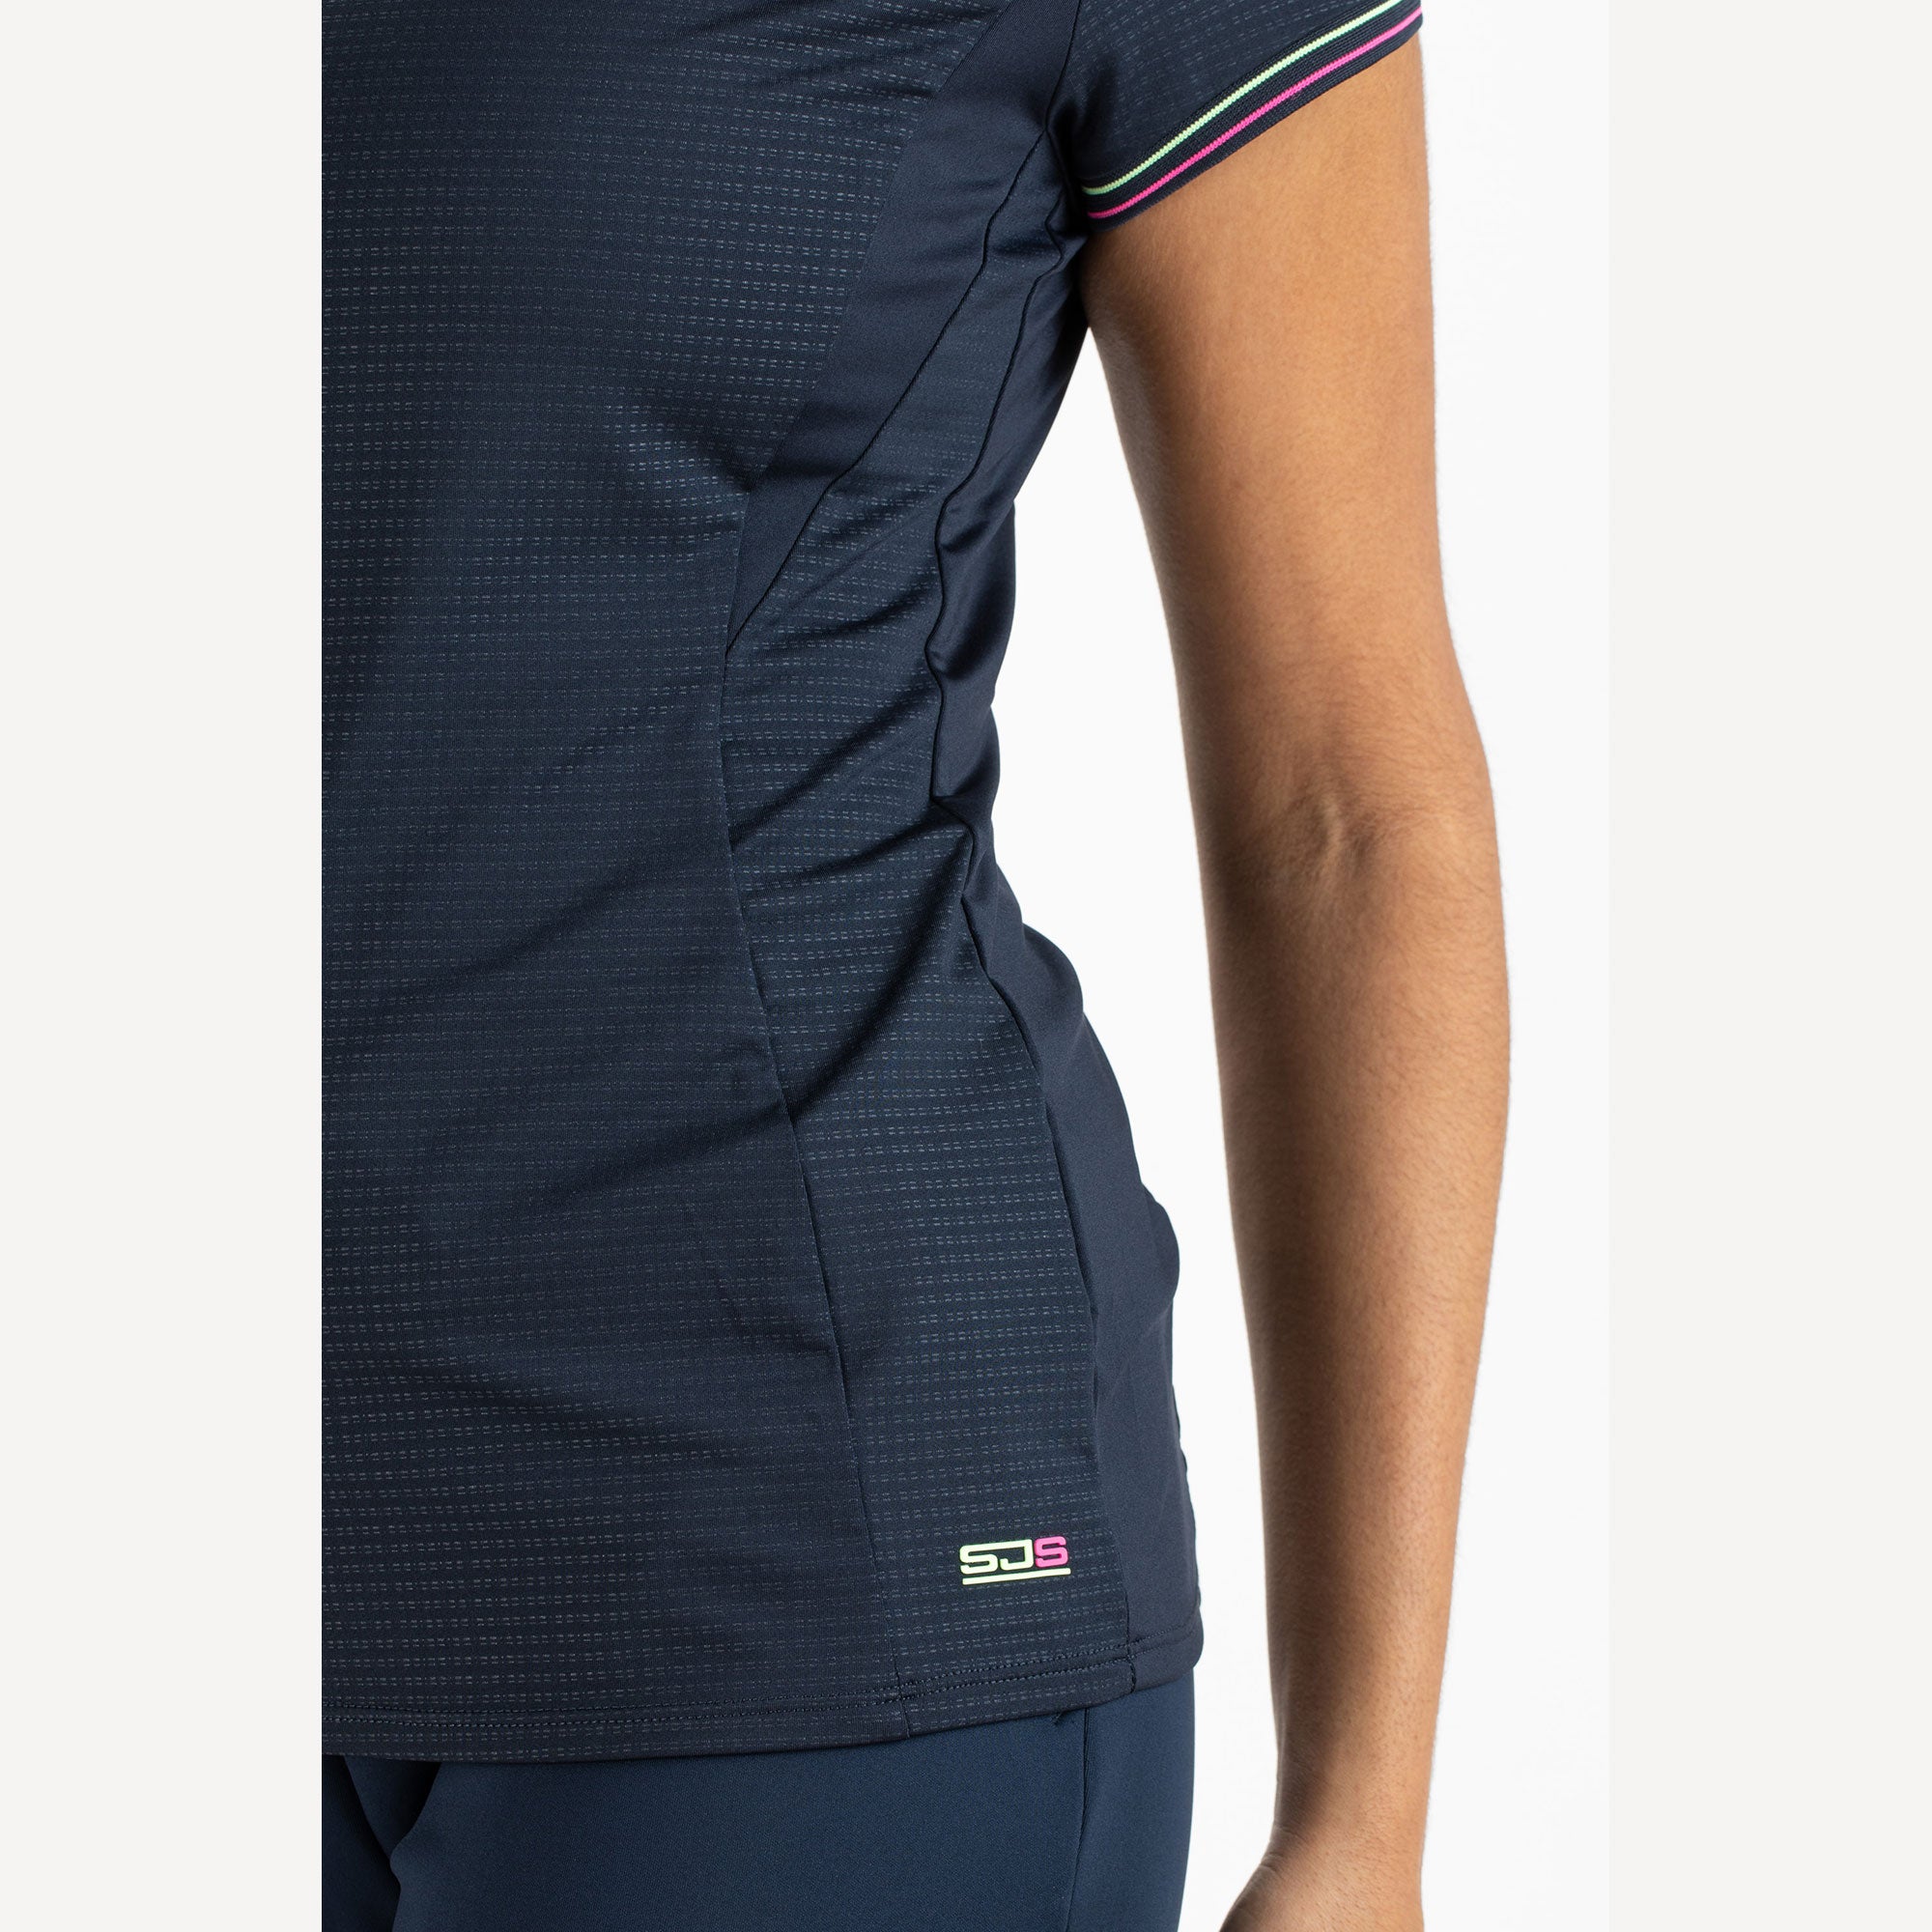 Sjeng Sports Dorothee Women's Tennis Shirt Blue (4)